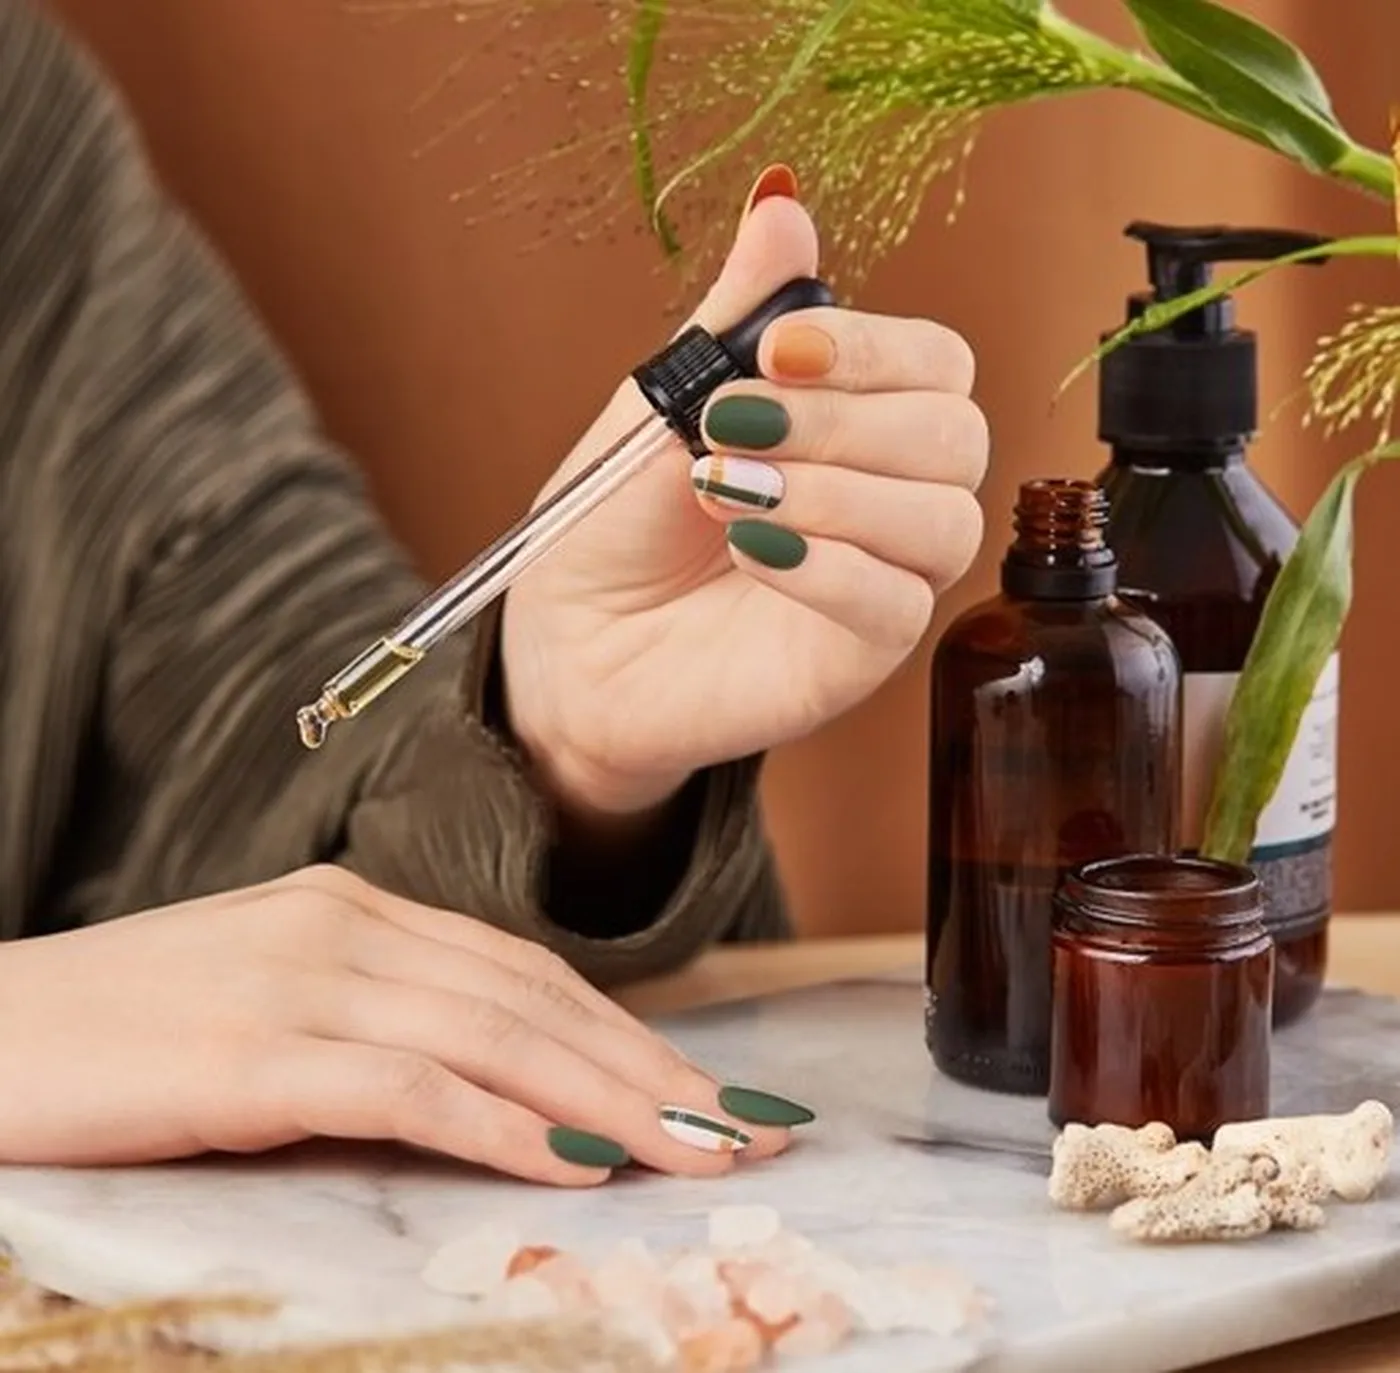 Jak zachować higienę podczas wykonywania manicure?